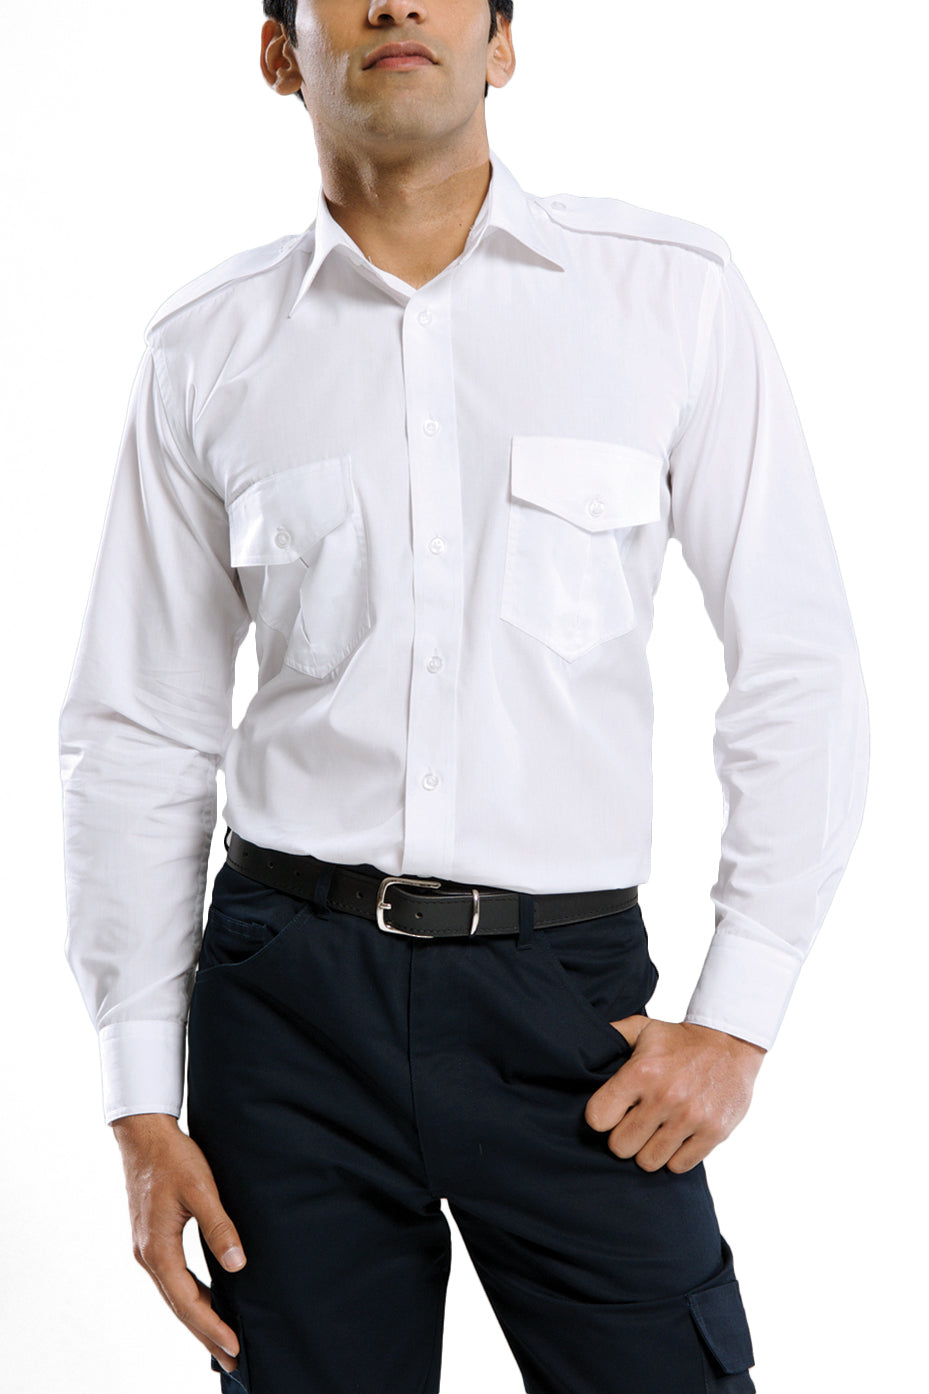 Men's Long Sleeve Epaulette Shirt